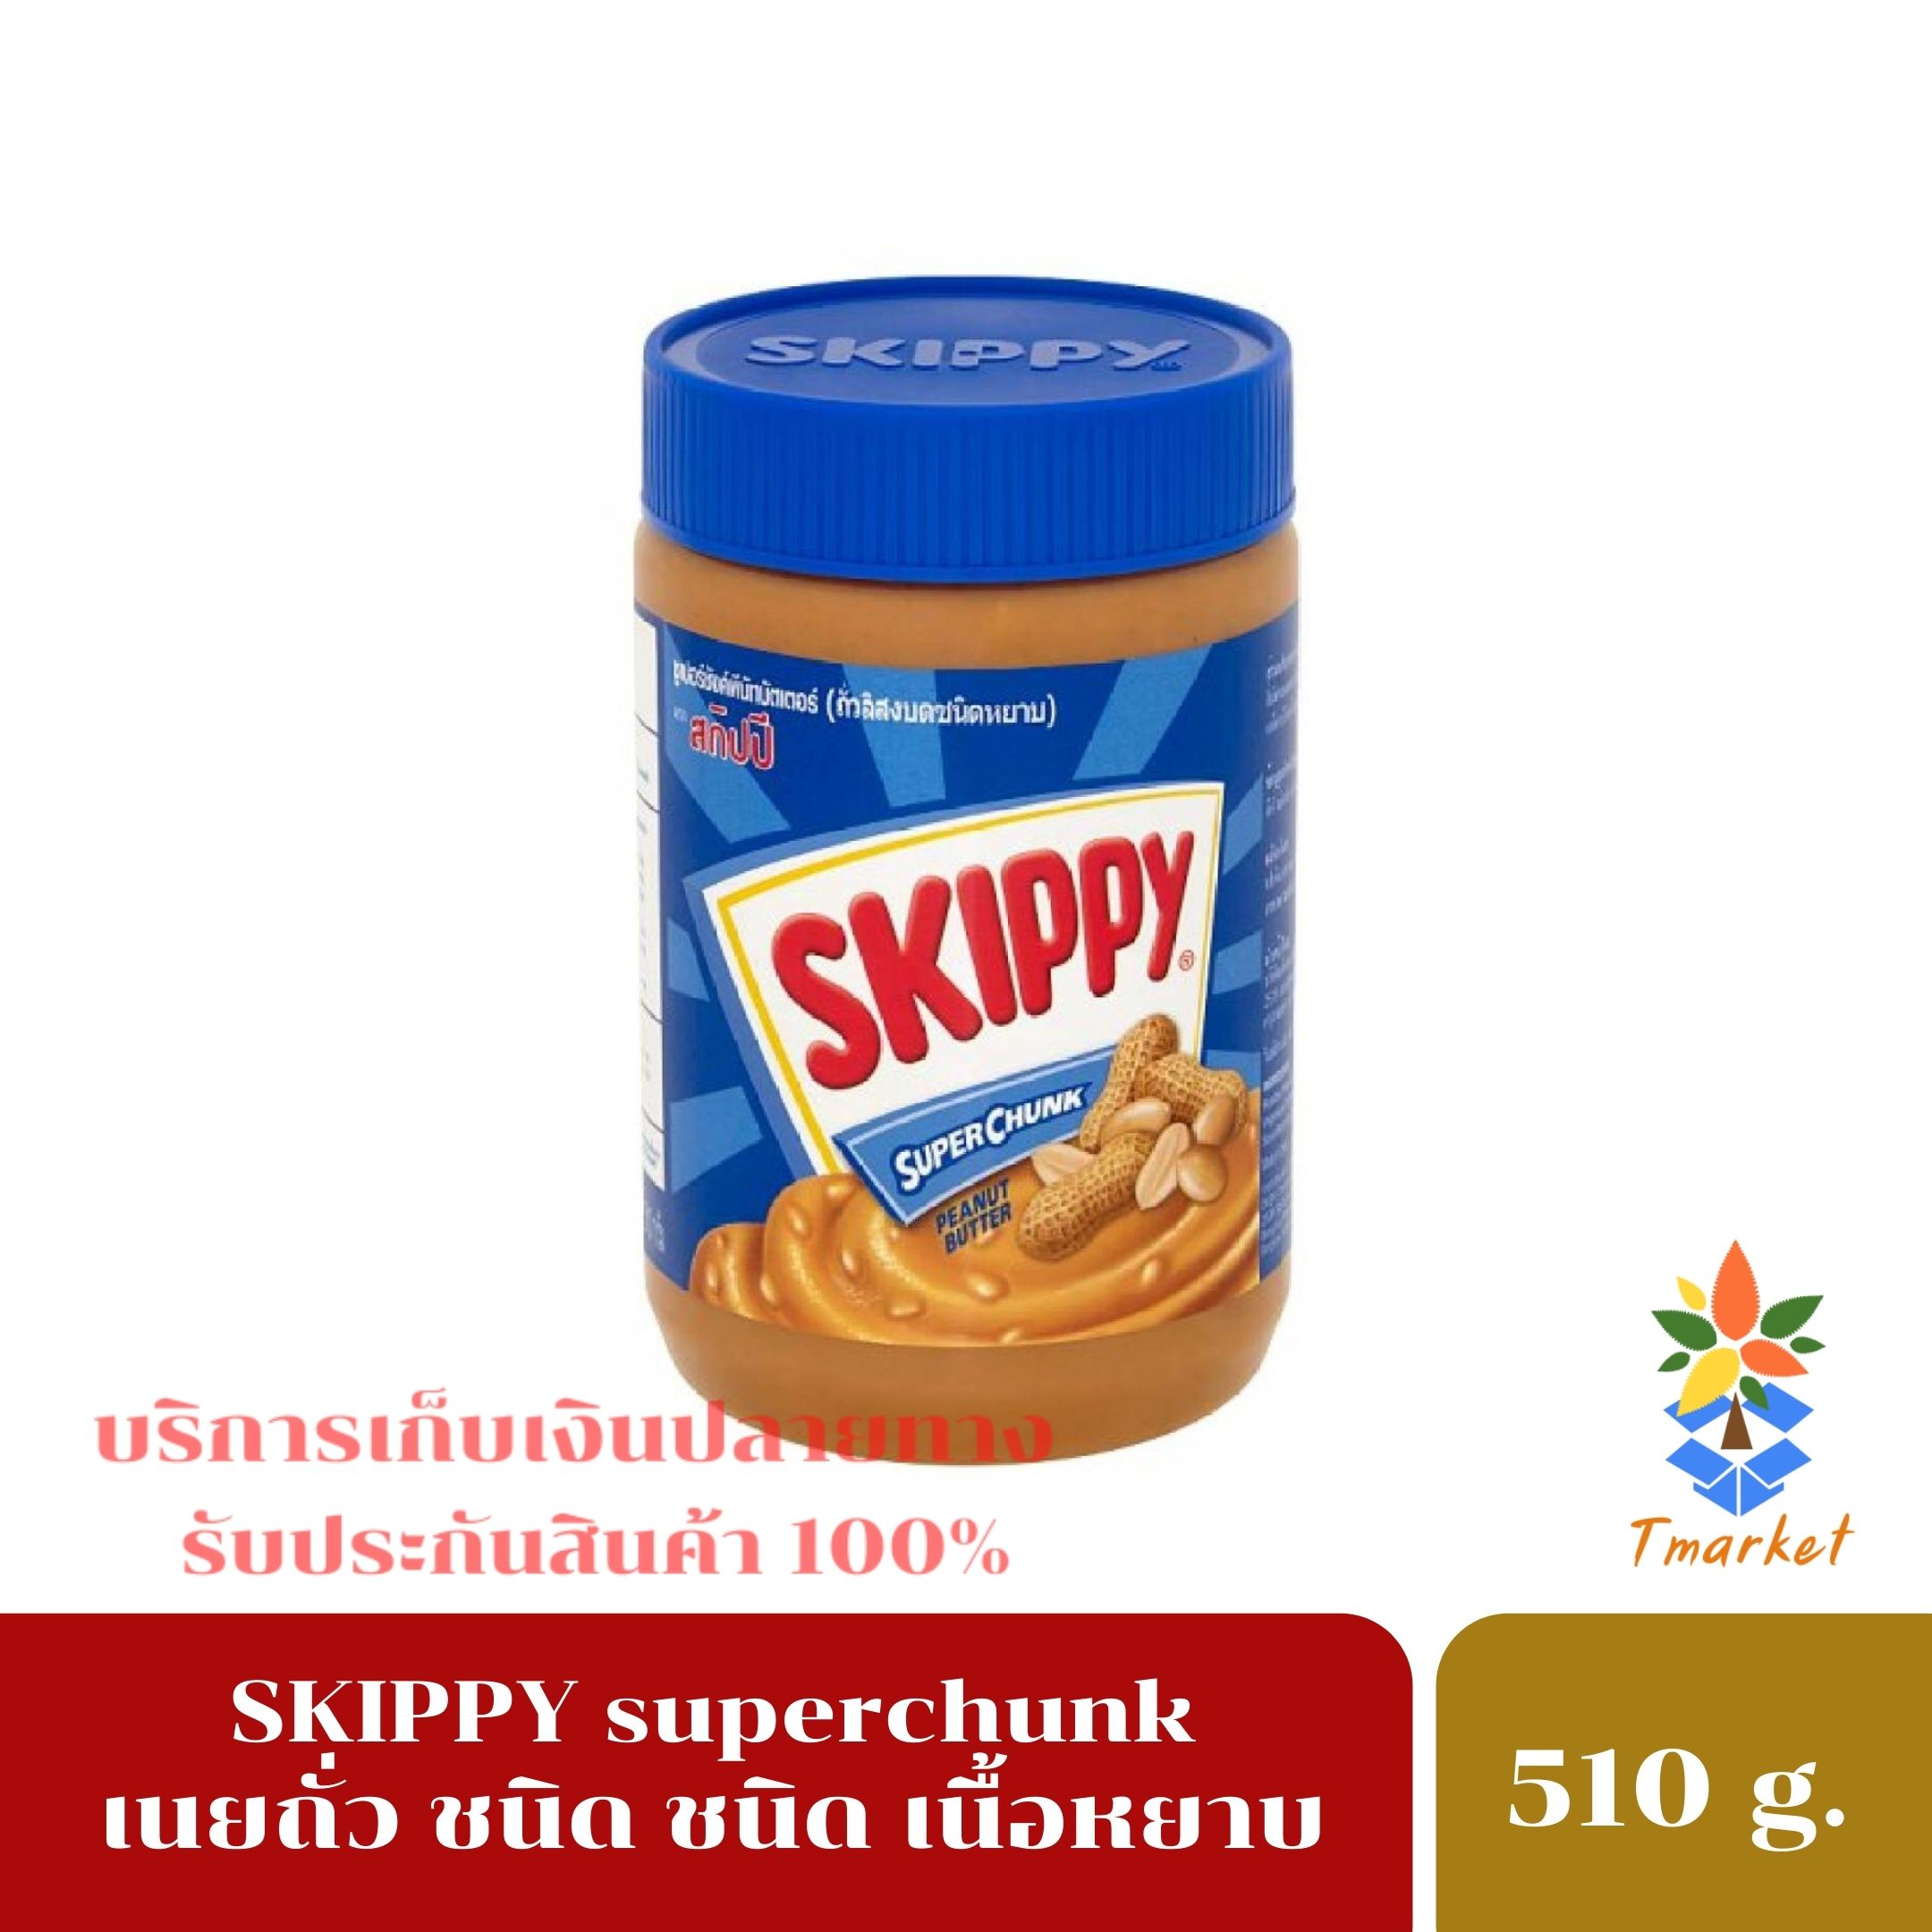 Skippy สกิปปี้ เนยถั่ว ทาขนมปัง ชนิดหยาบ รสชาติไม่หวาน มัน เค็ม และครีมมี่ โปรตีนสุง ขนาด 510 g. ส่งด่วน